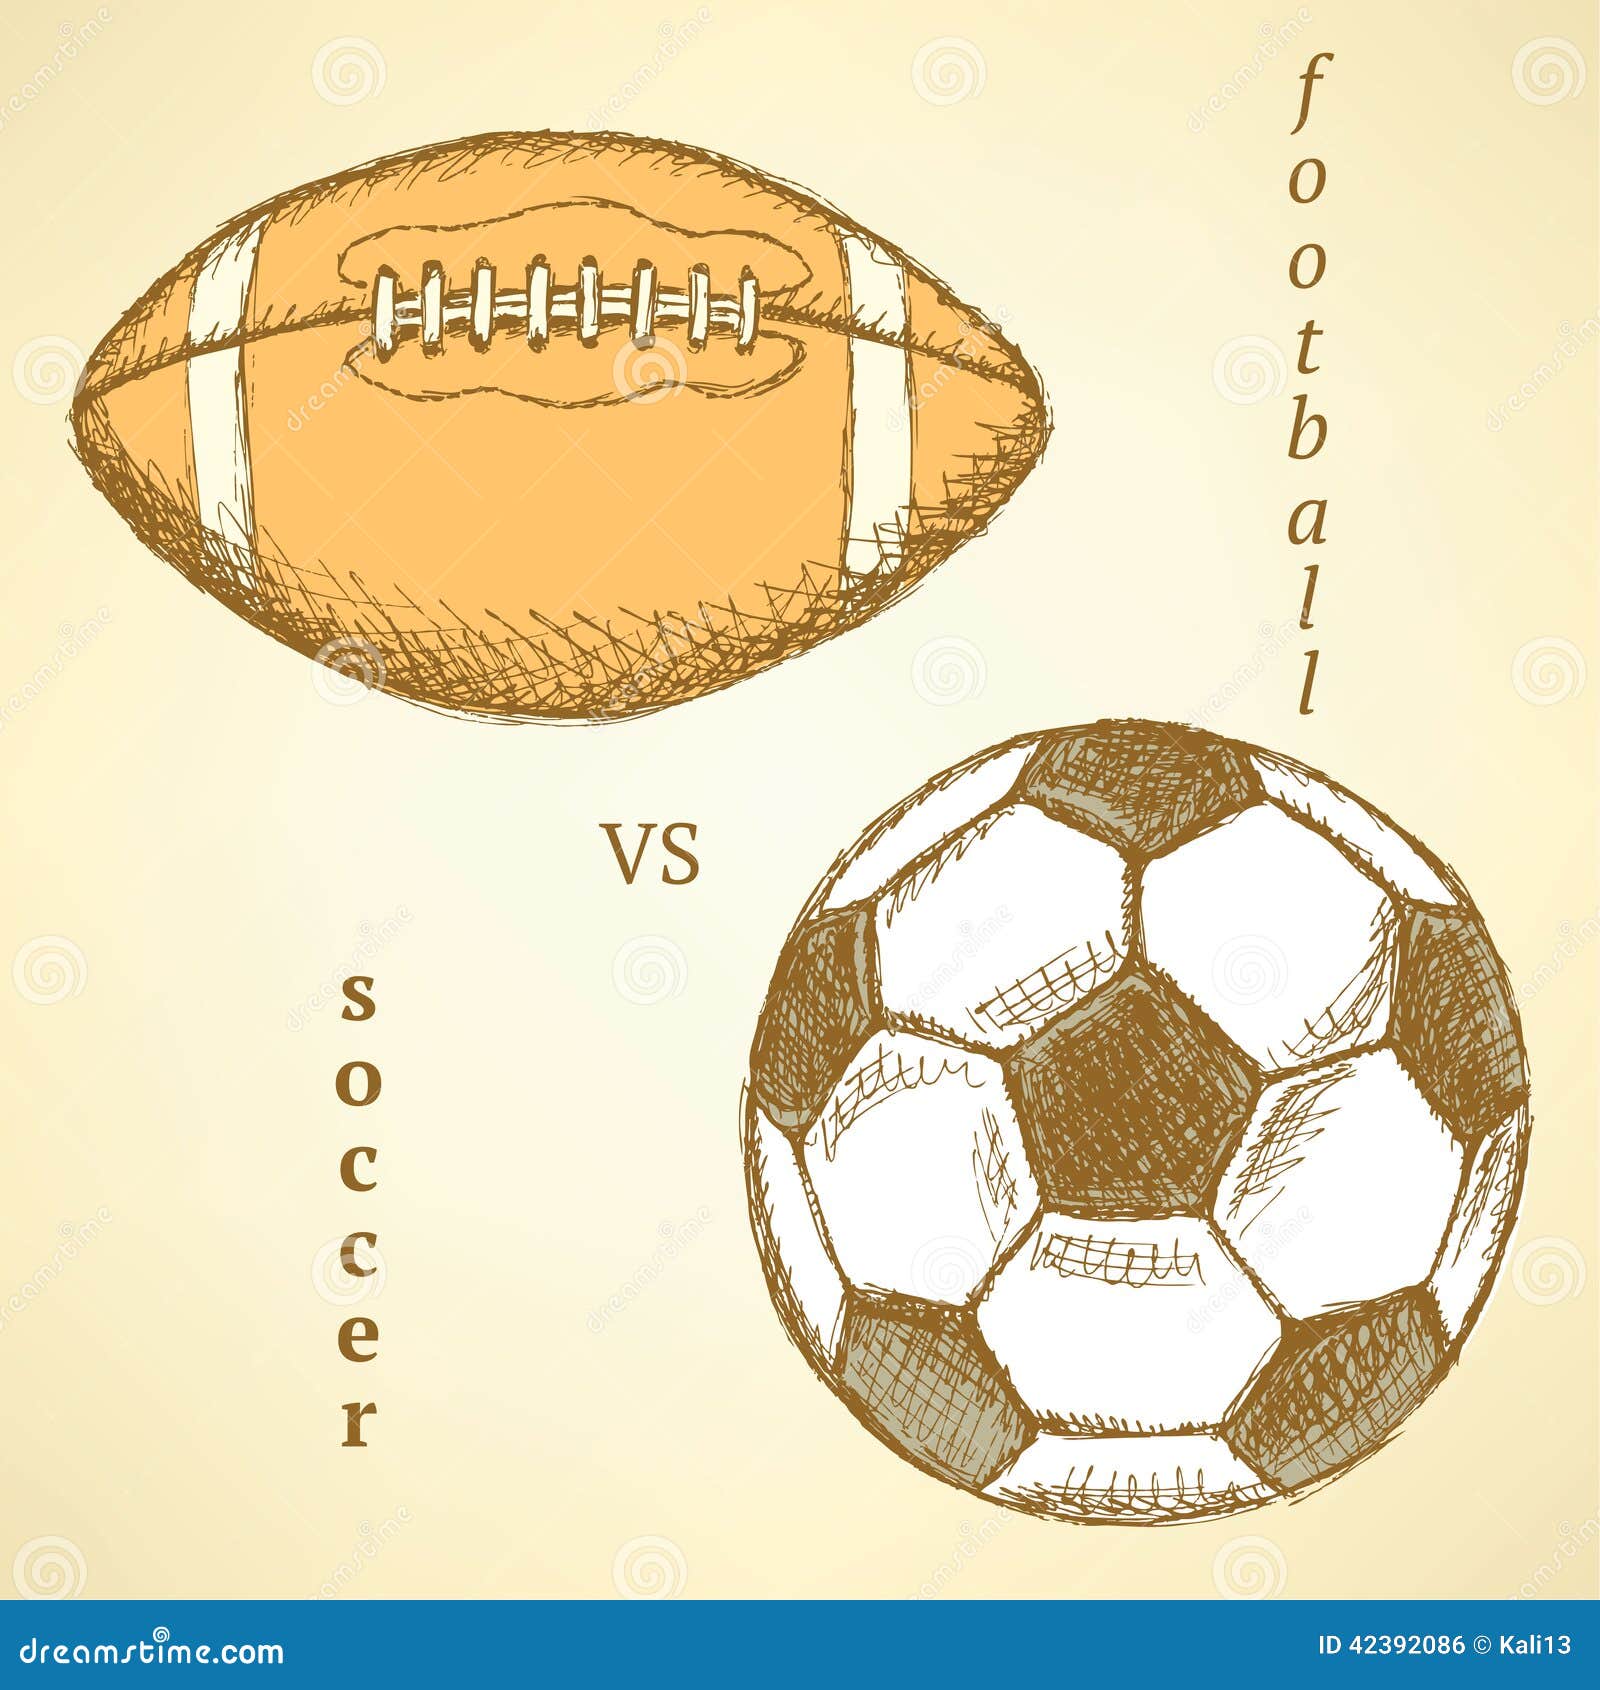 Soccer Sketch Images - Free Download on Freepik